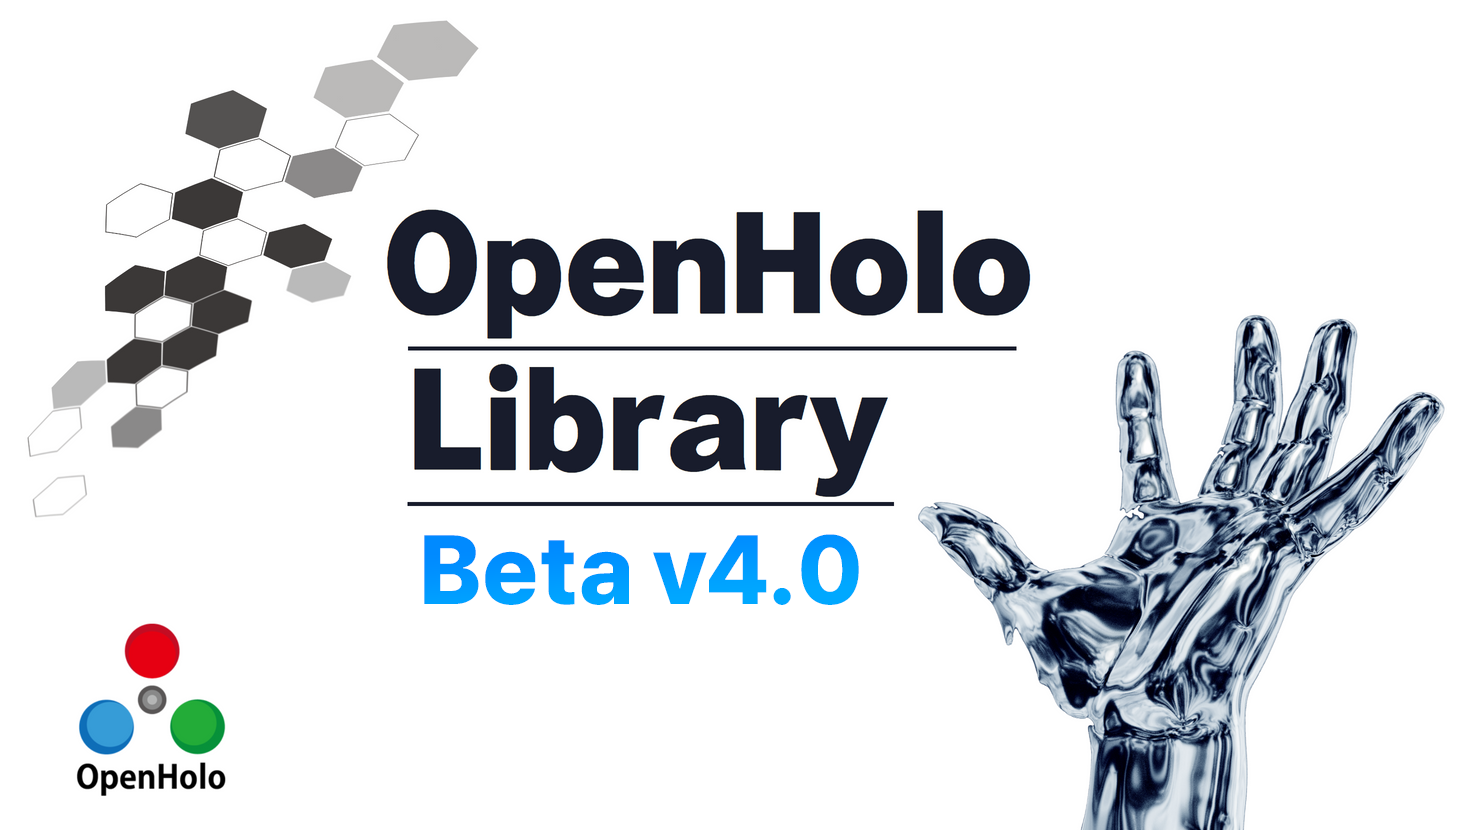 OPENHOLO Library beta v4.0